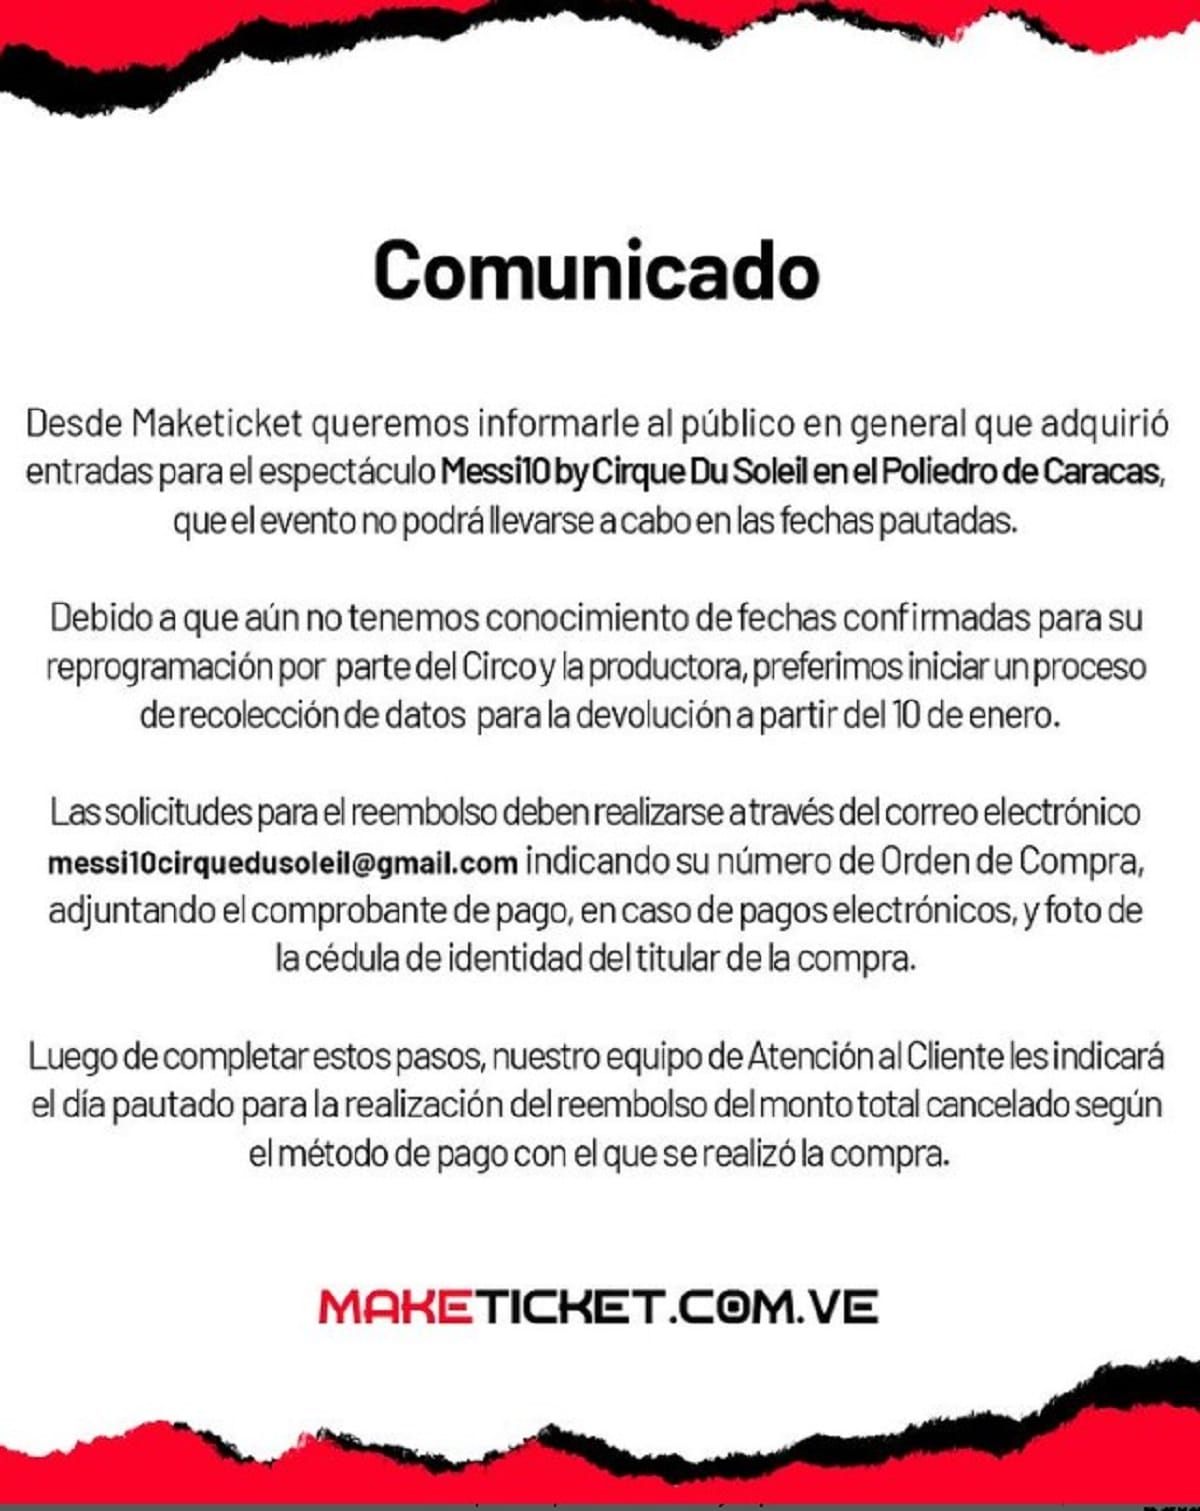 Confirmaron la suspensión del evento Messi10 Cirque Du Soleil previsto en Caracas